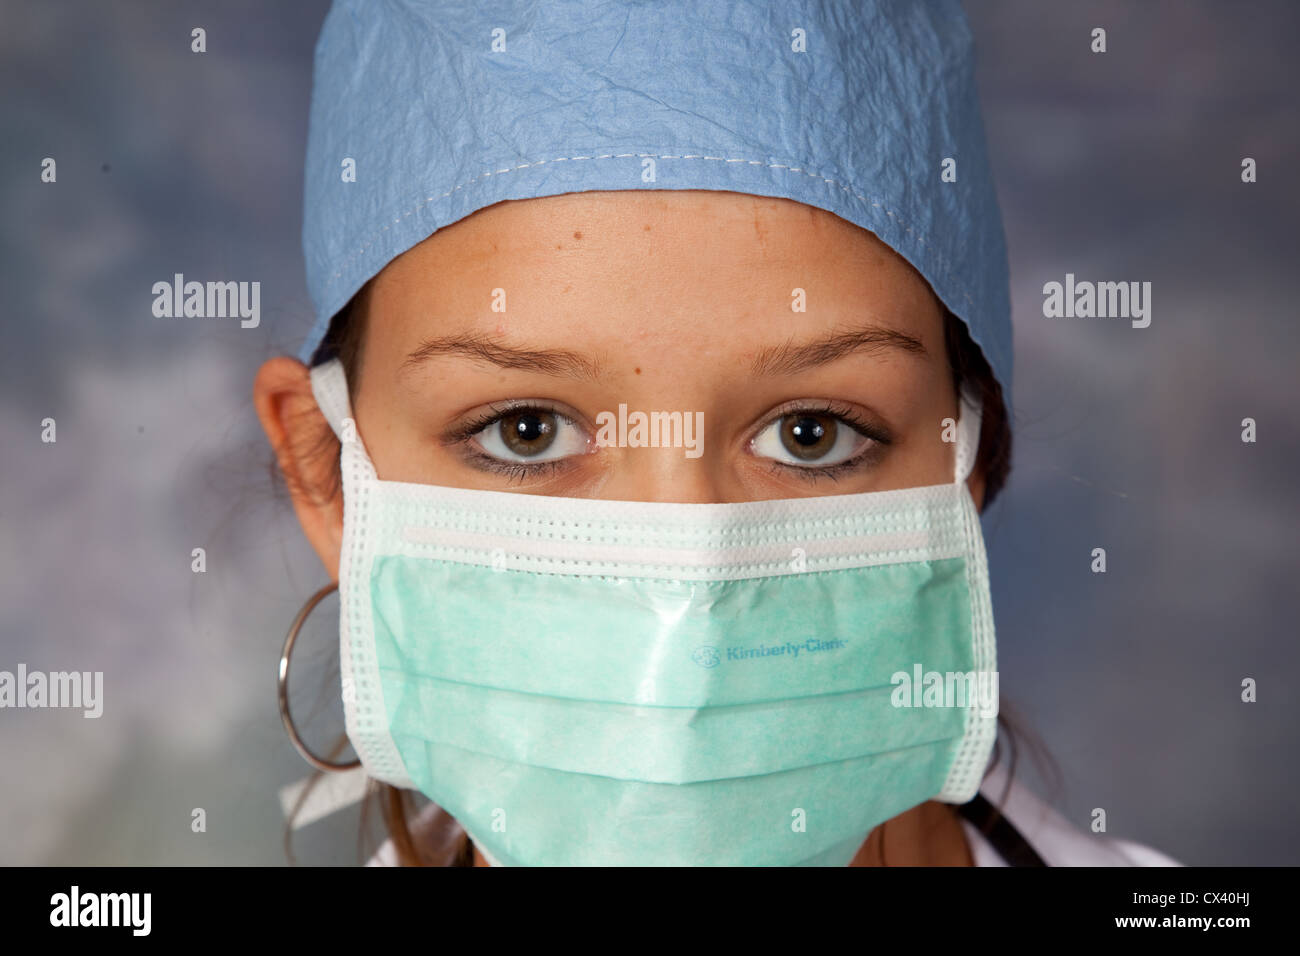 Travailleur de la santé des femmes, portant un sarrau blanc, scrub hat et s regardant la caméra Banque D'Images